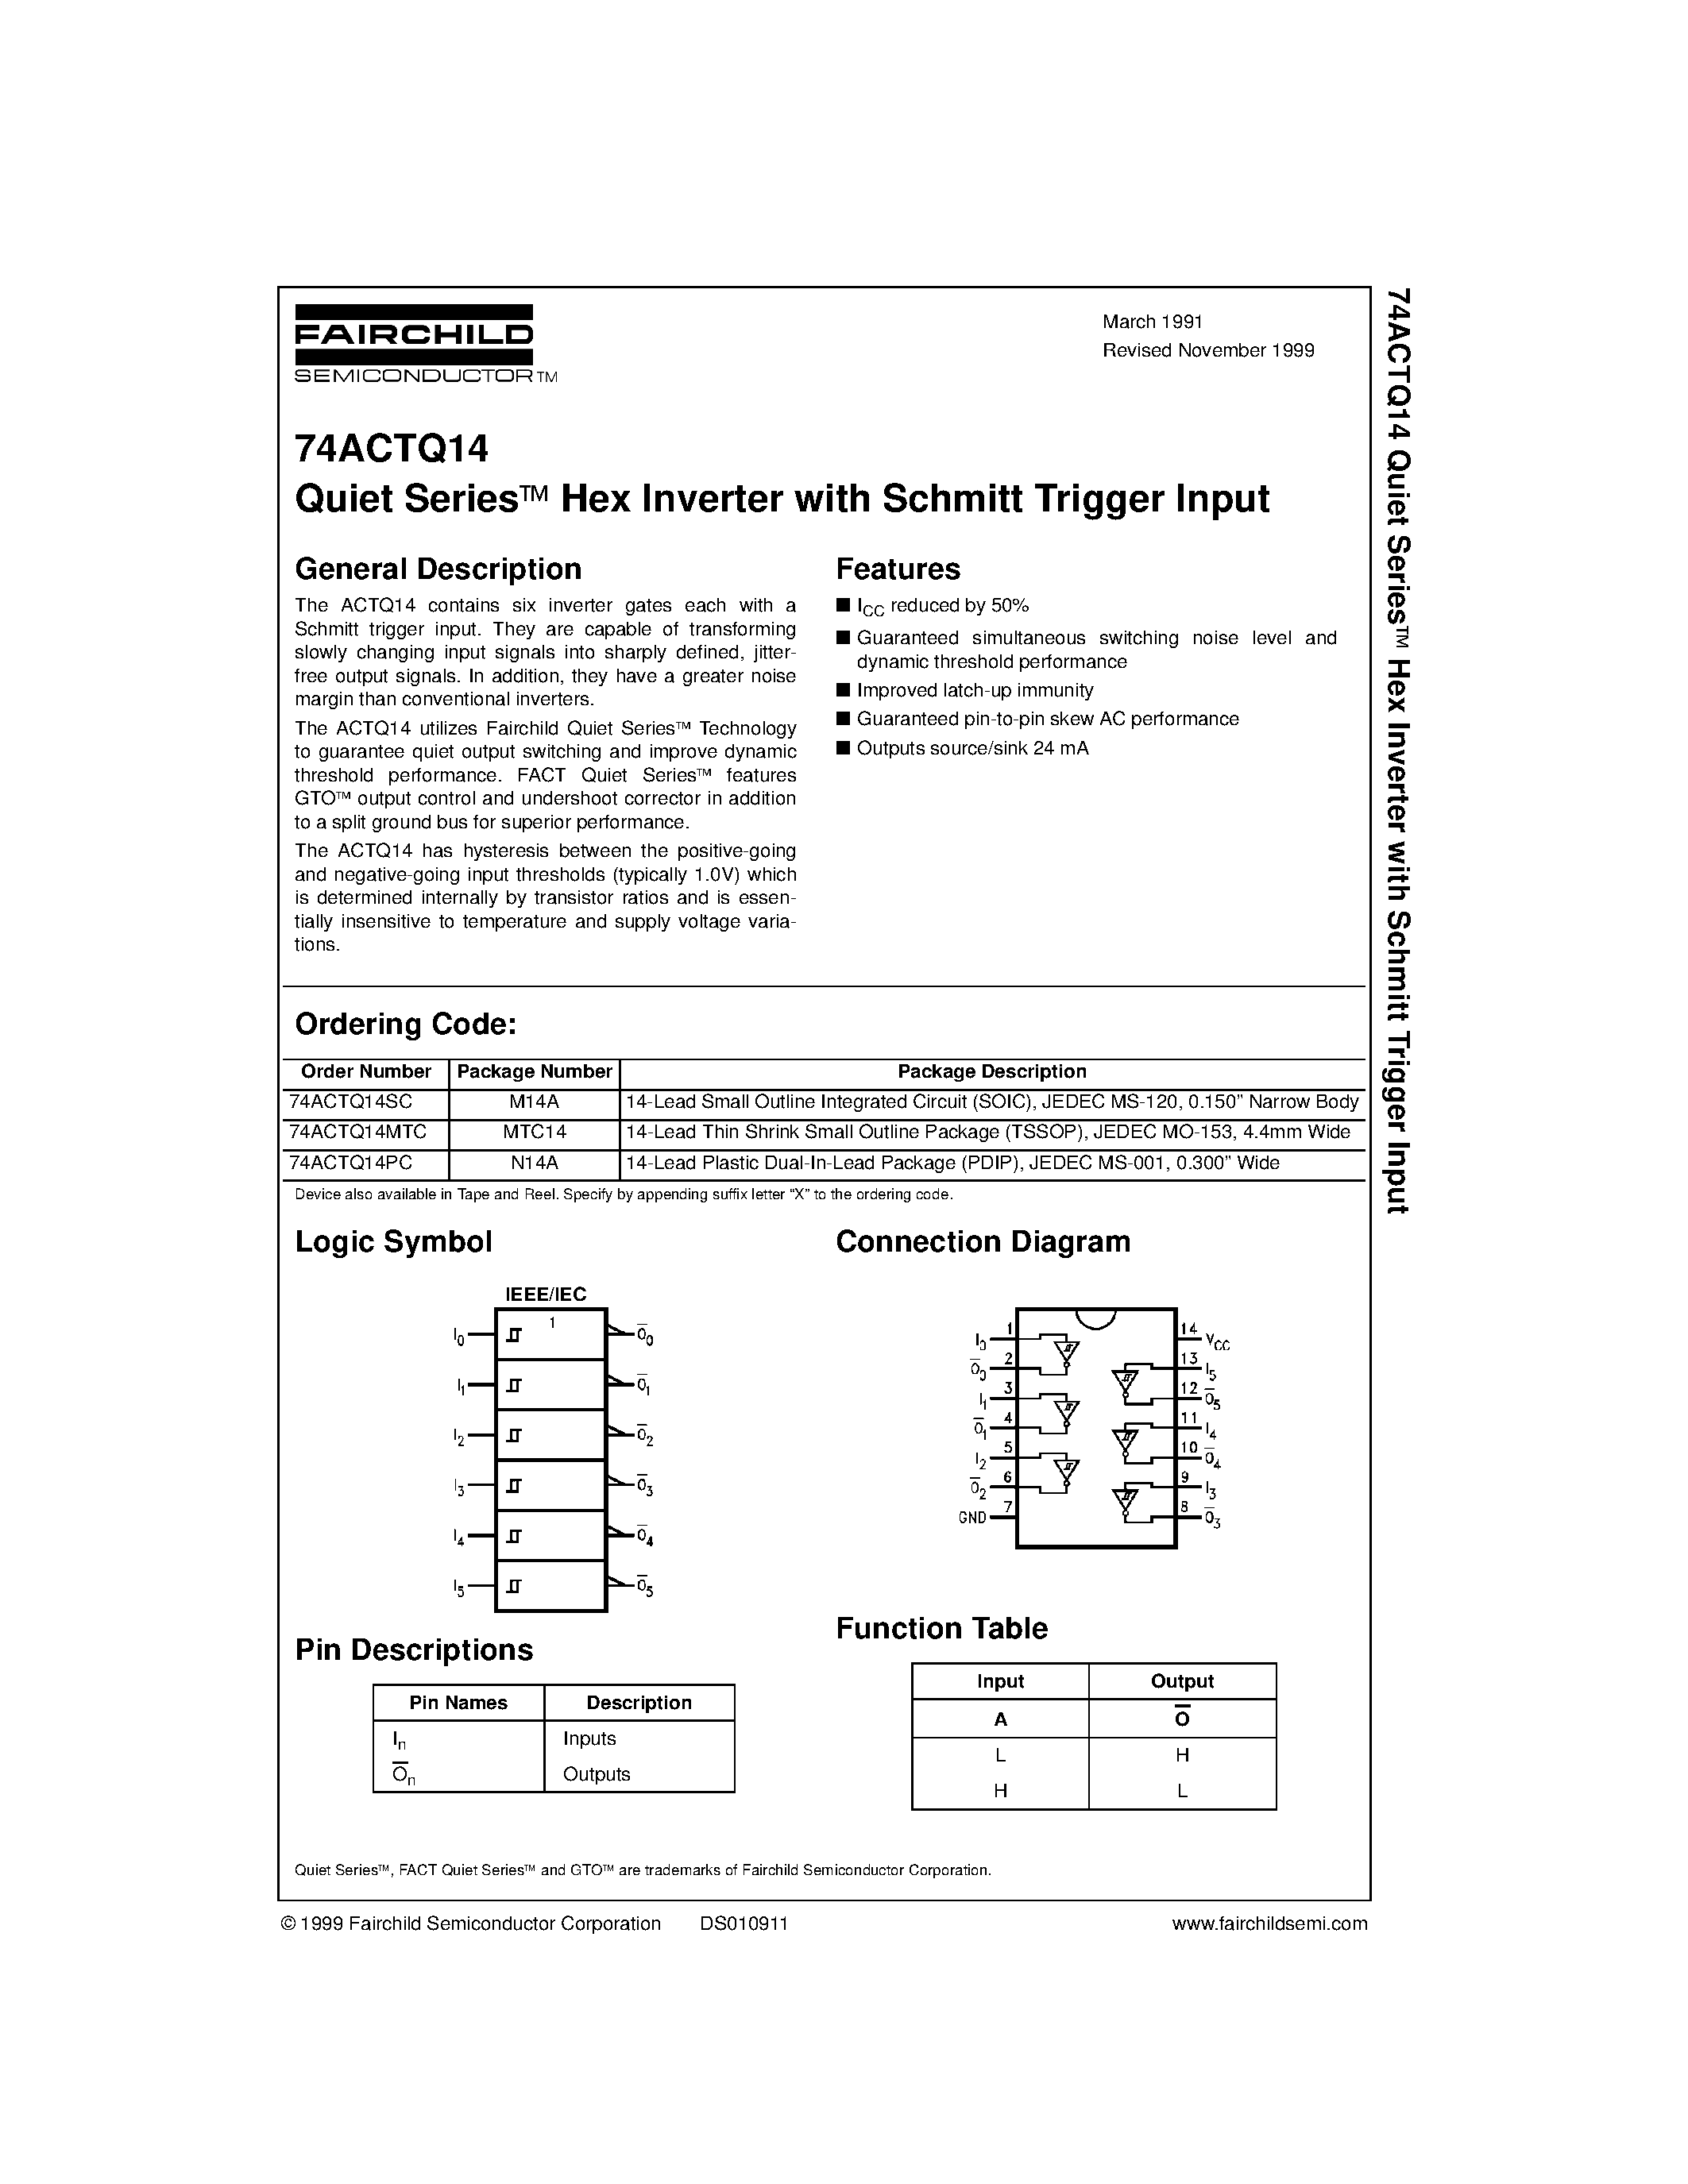 Datasheet 74ACTQ14PC - Quiet Series Hex Inverter with Schmitt Trigger Input page 1